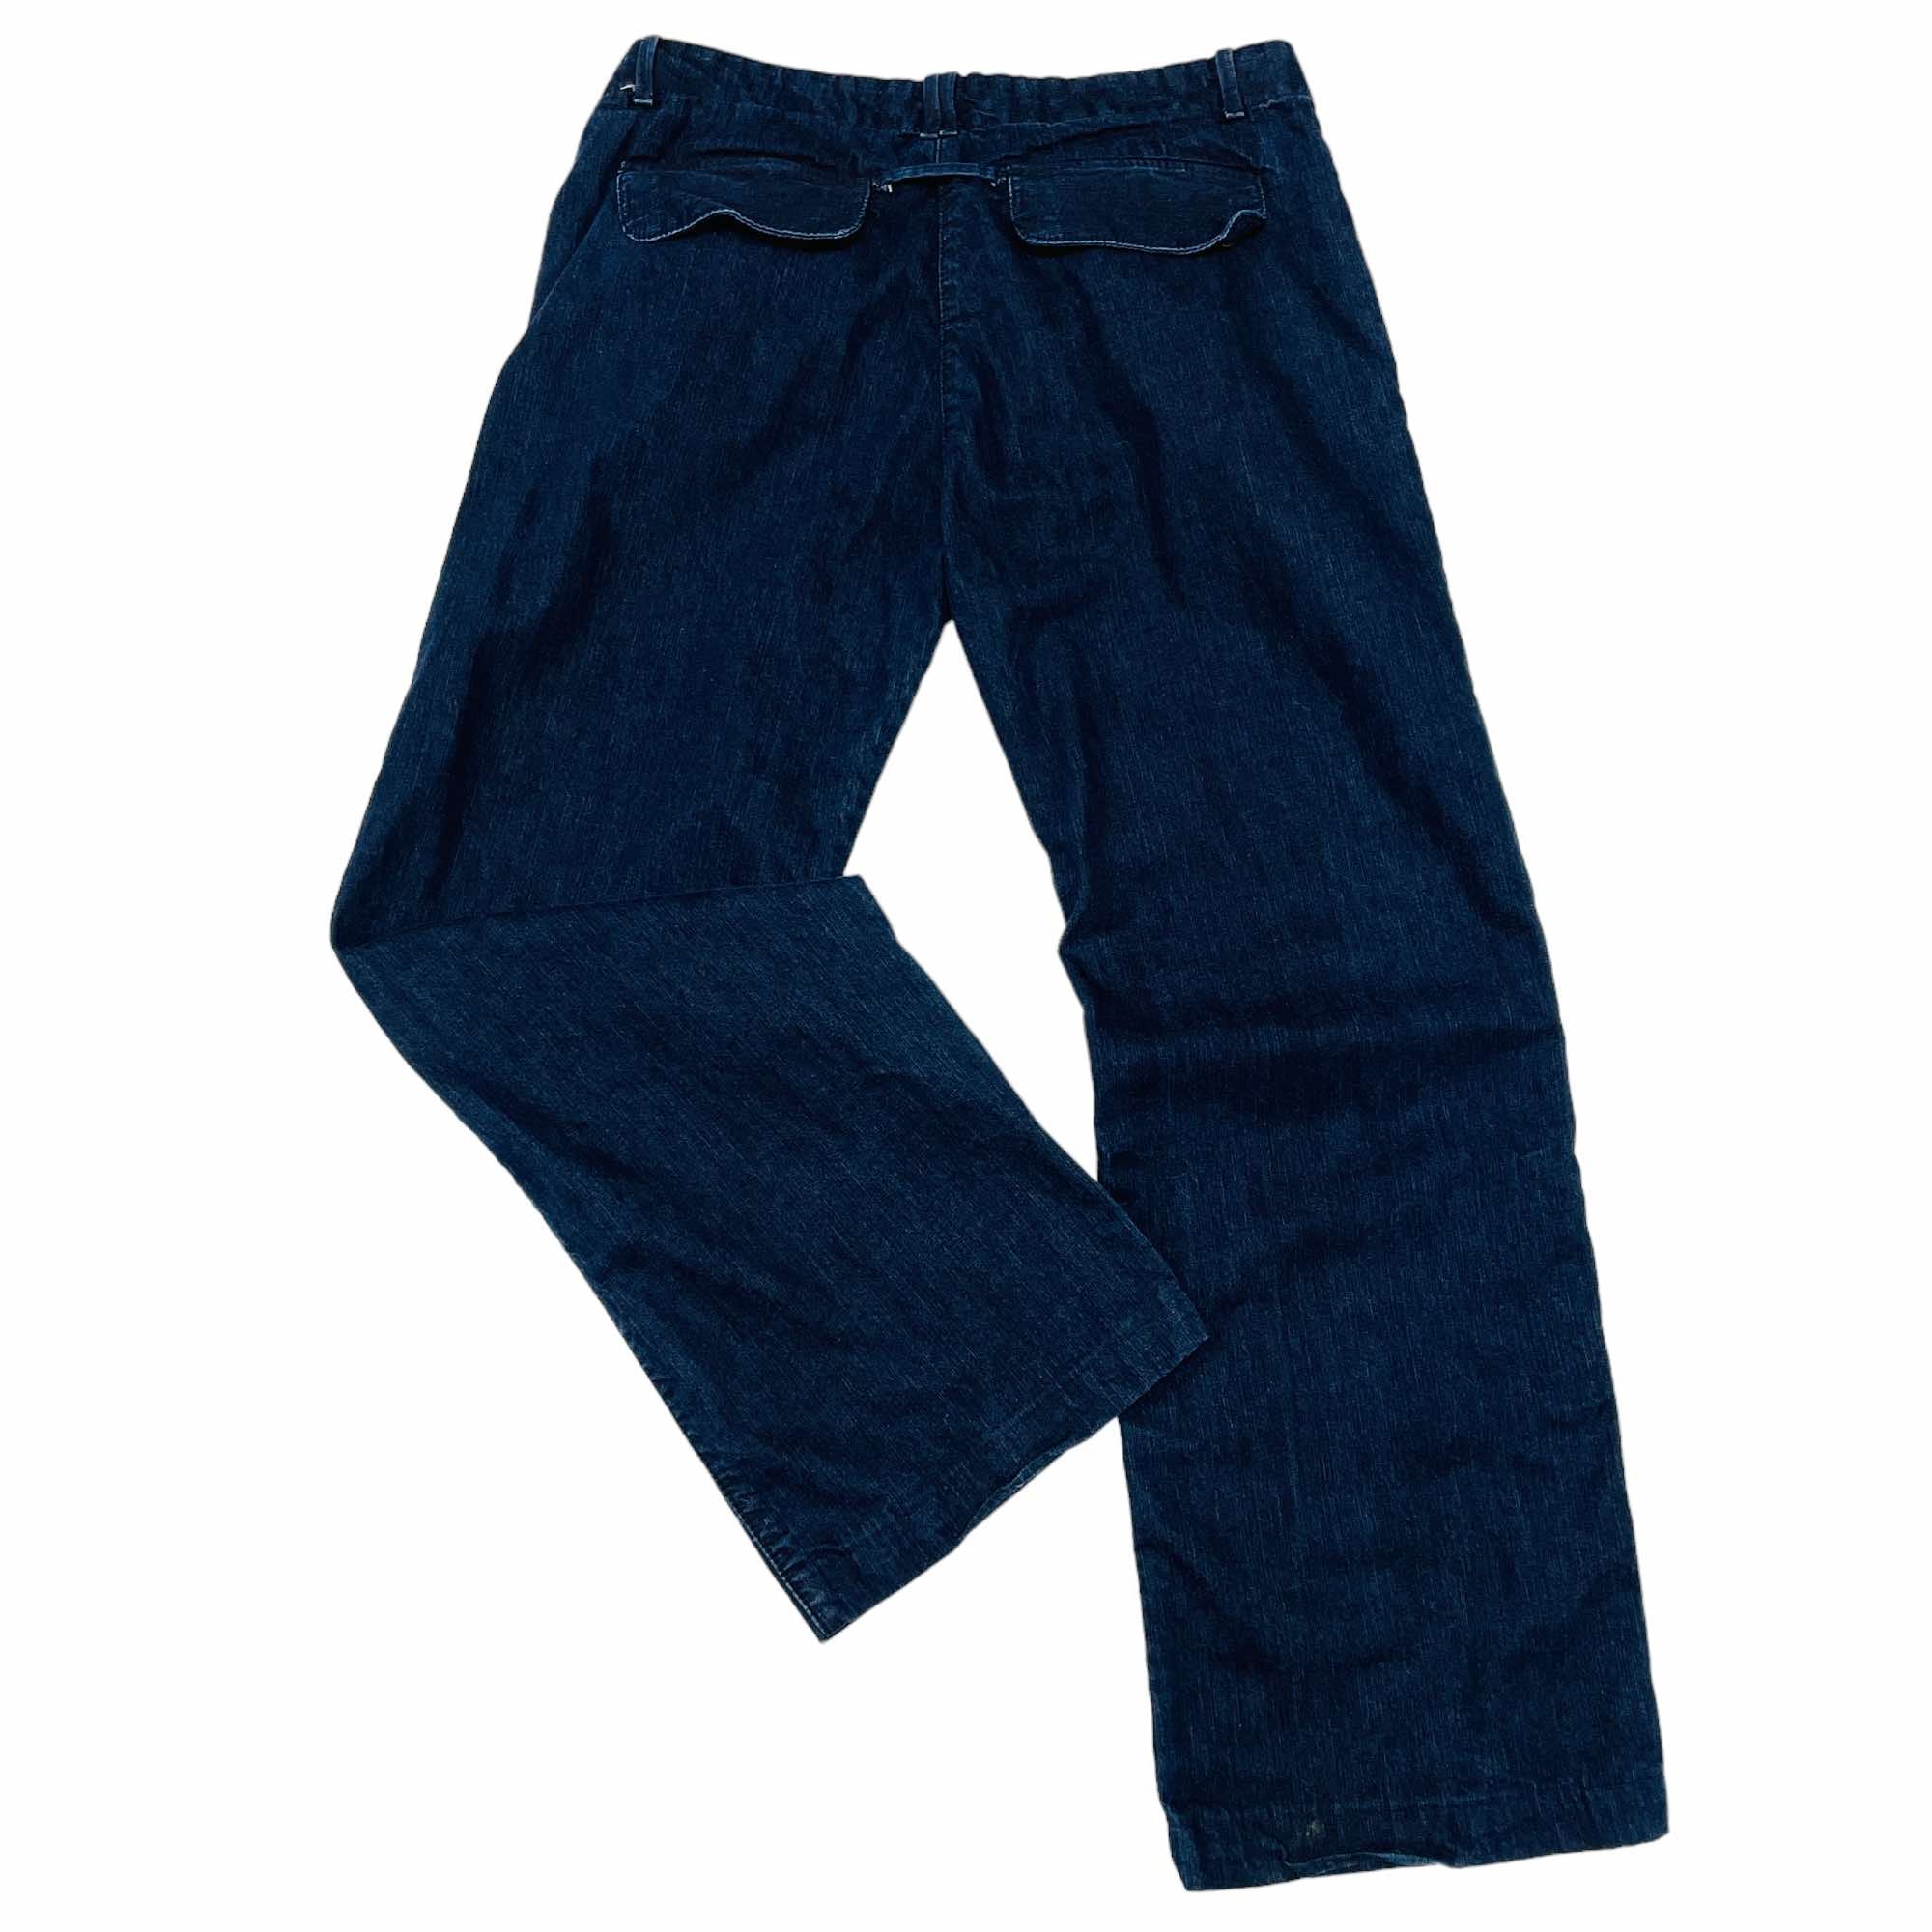 Ladies Timberland Denim Jeans - W34 L28